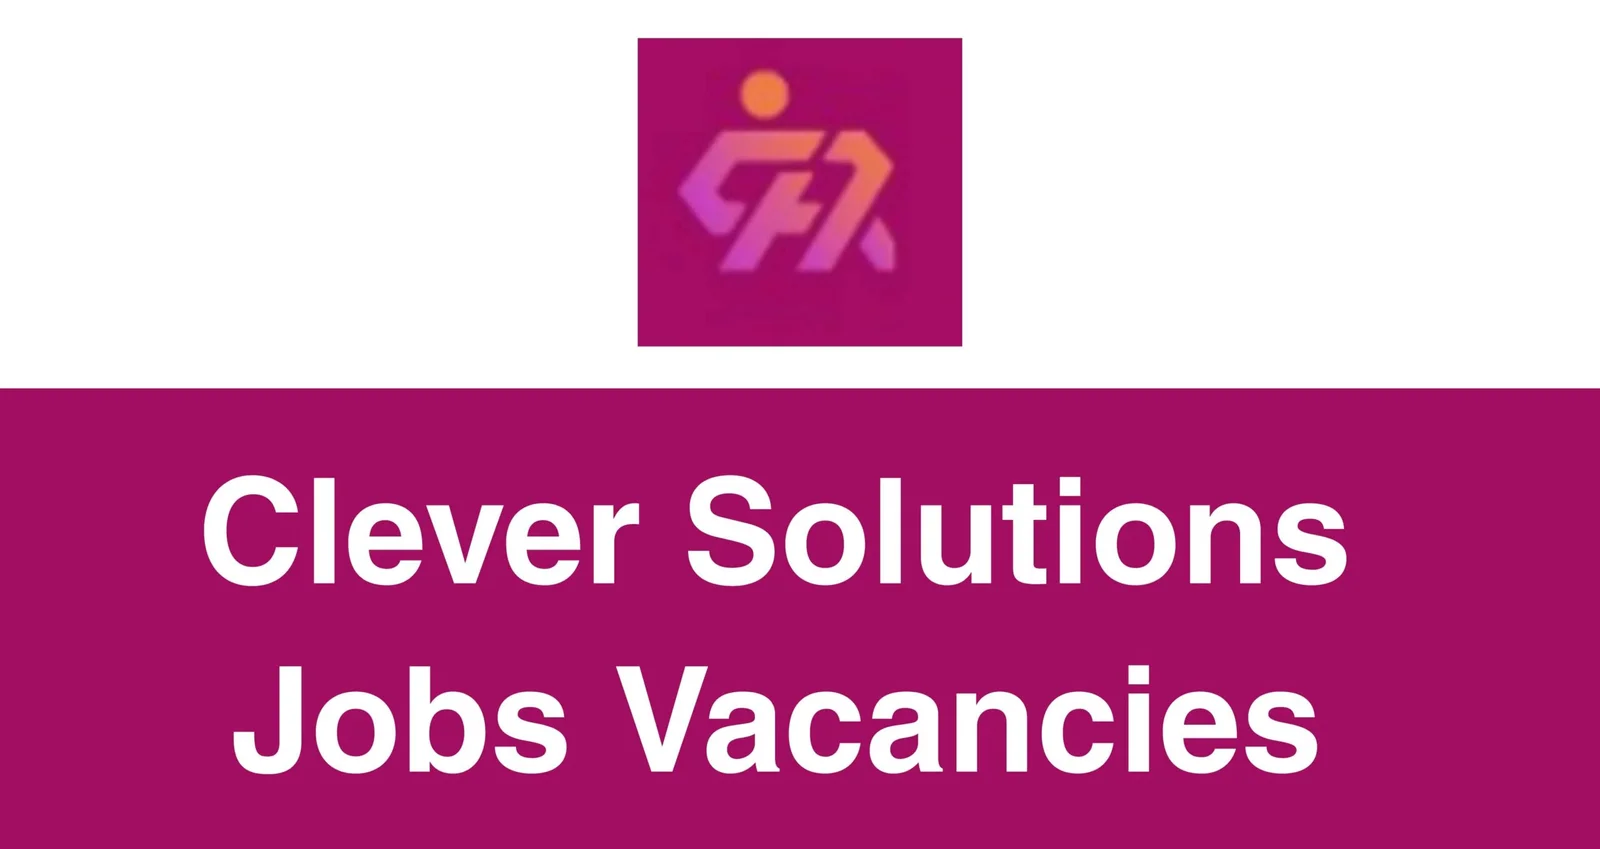 Clever Solutions Jobs Vacancies